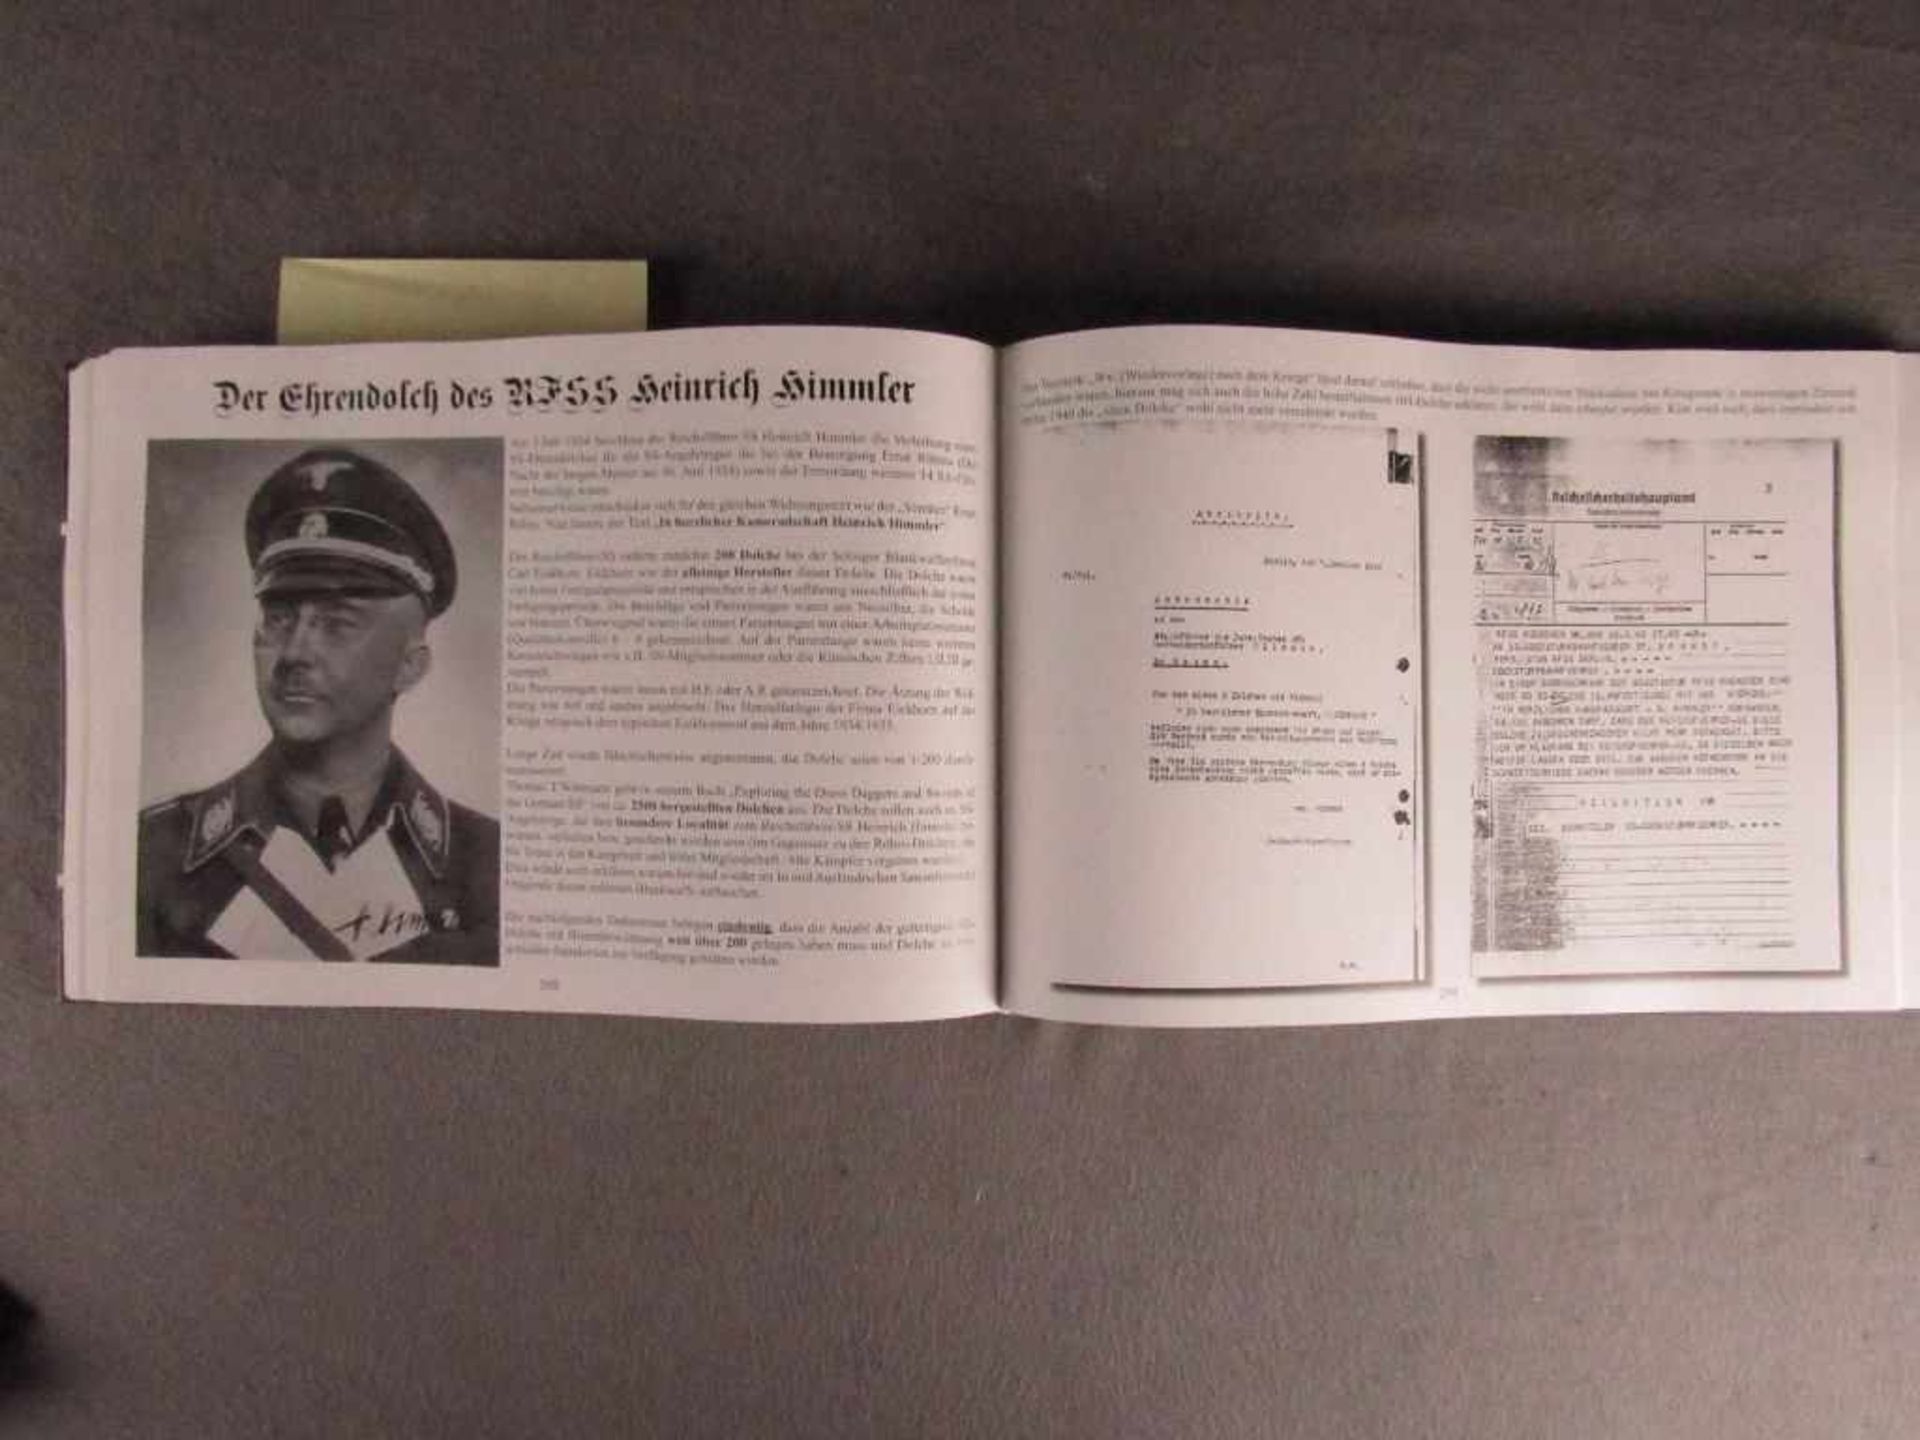 Sehr seltenes Buch Referenzbuch zur Bestimmung der Dienstdolche für SS ein Muss für jeden Sammler<b - Image 5 of 7